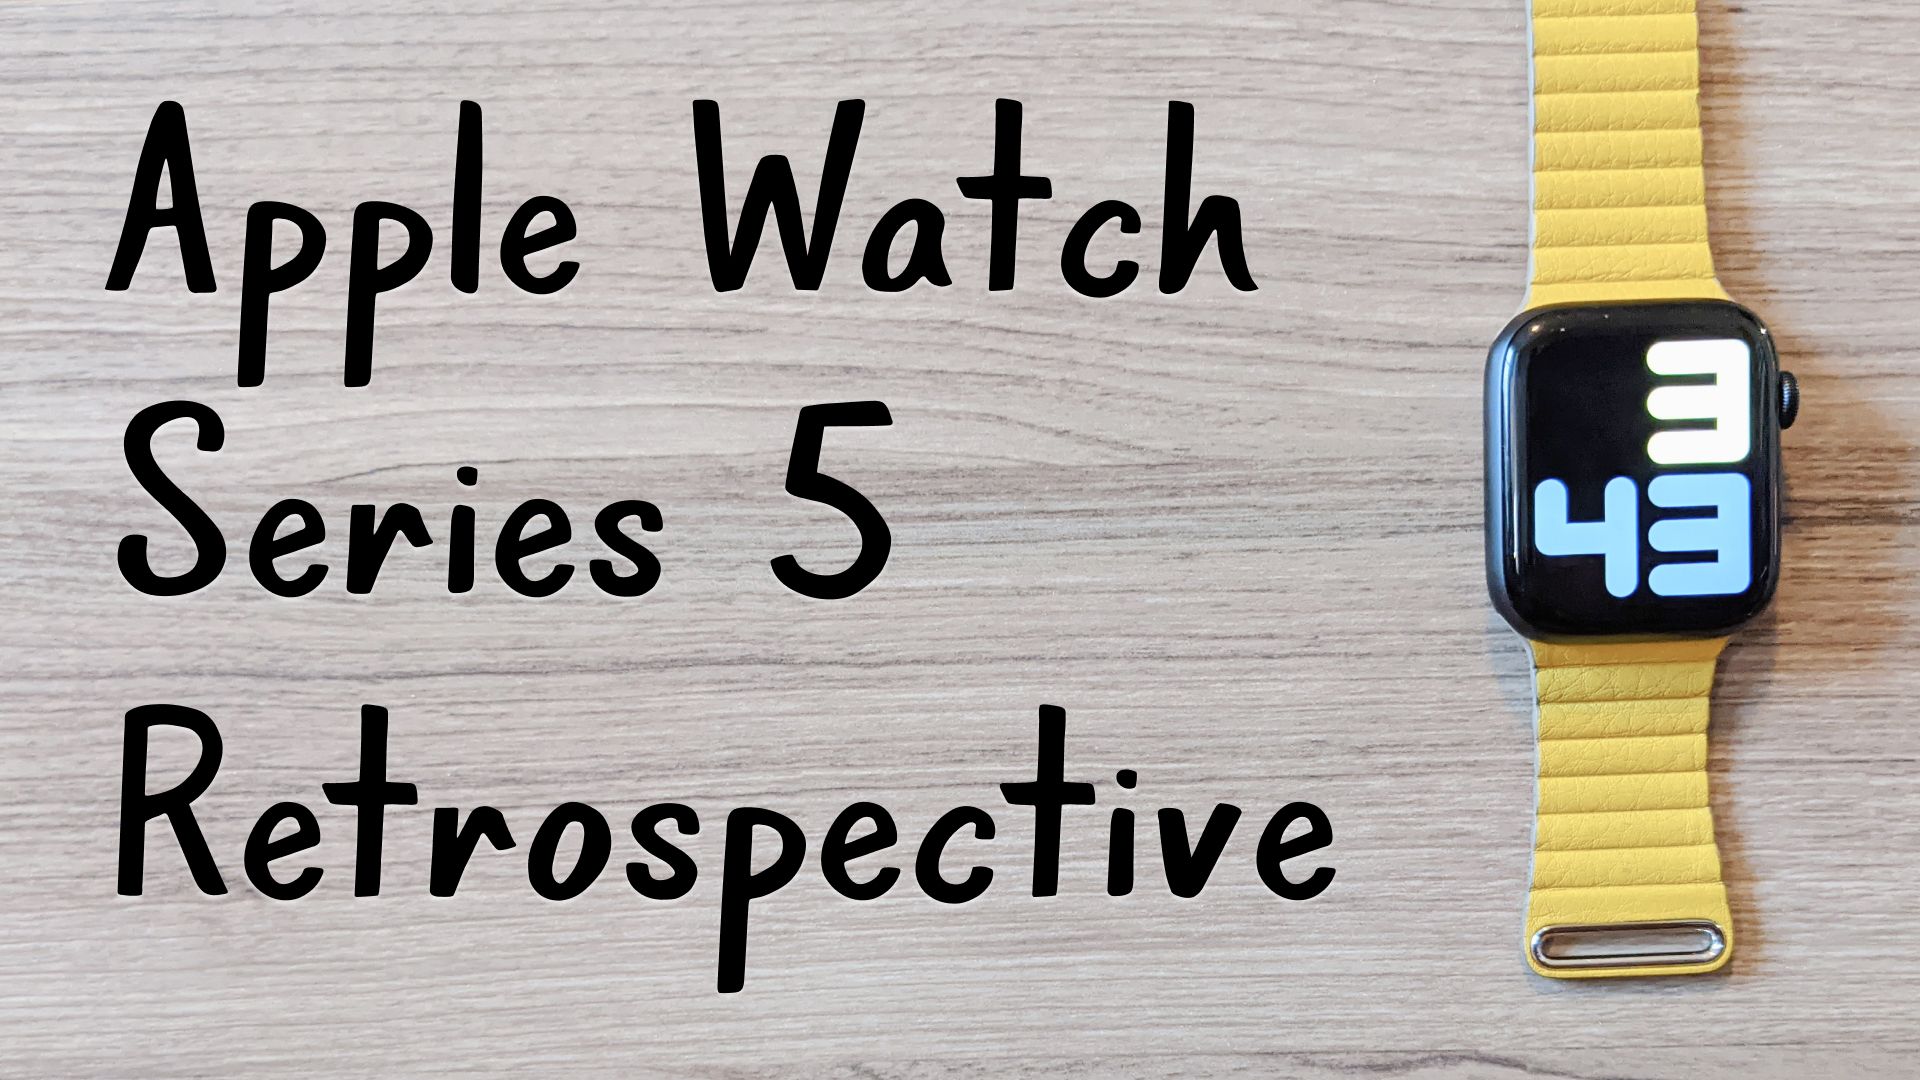 An Apple Watch Series 5 Retrospective